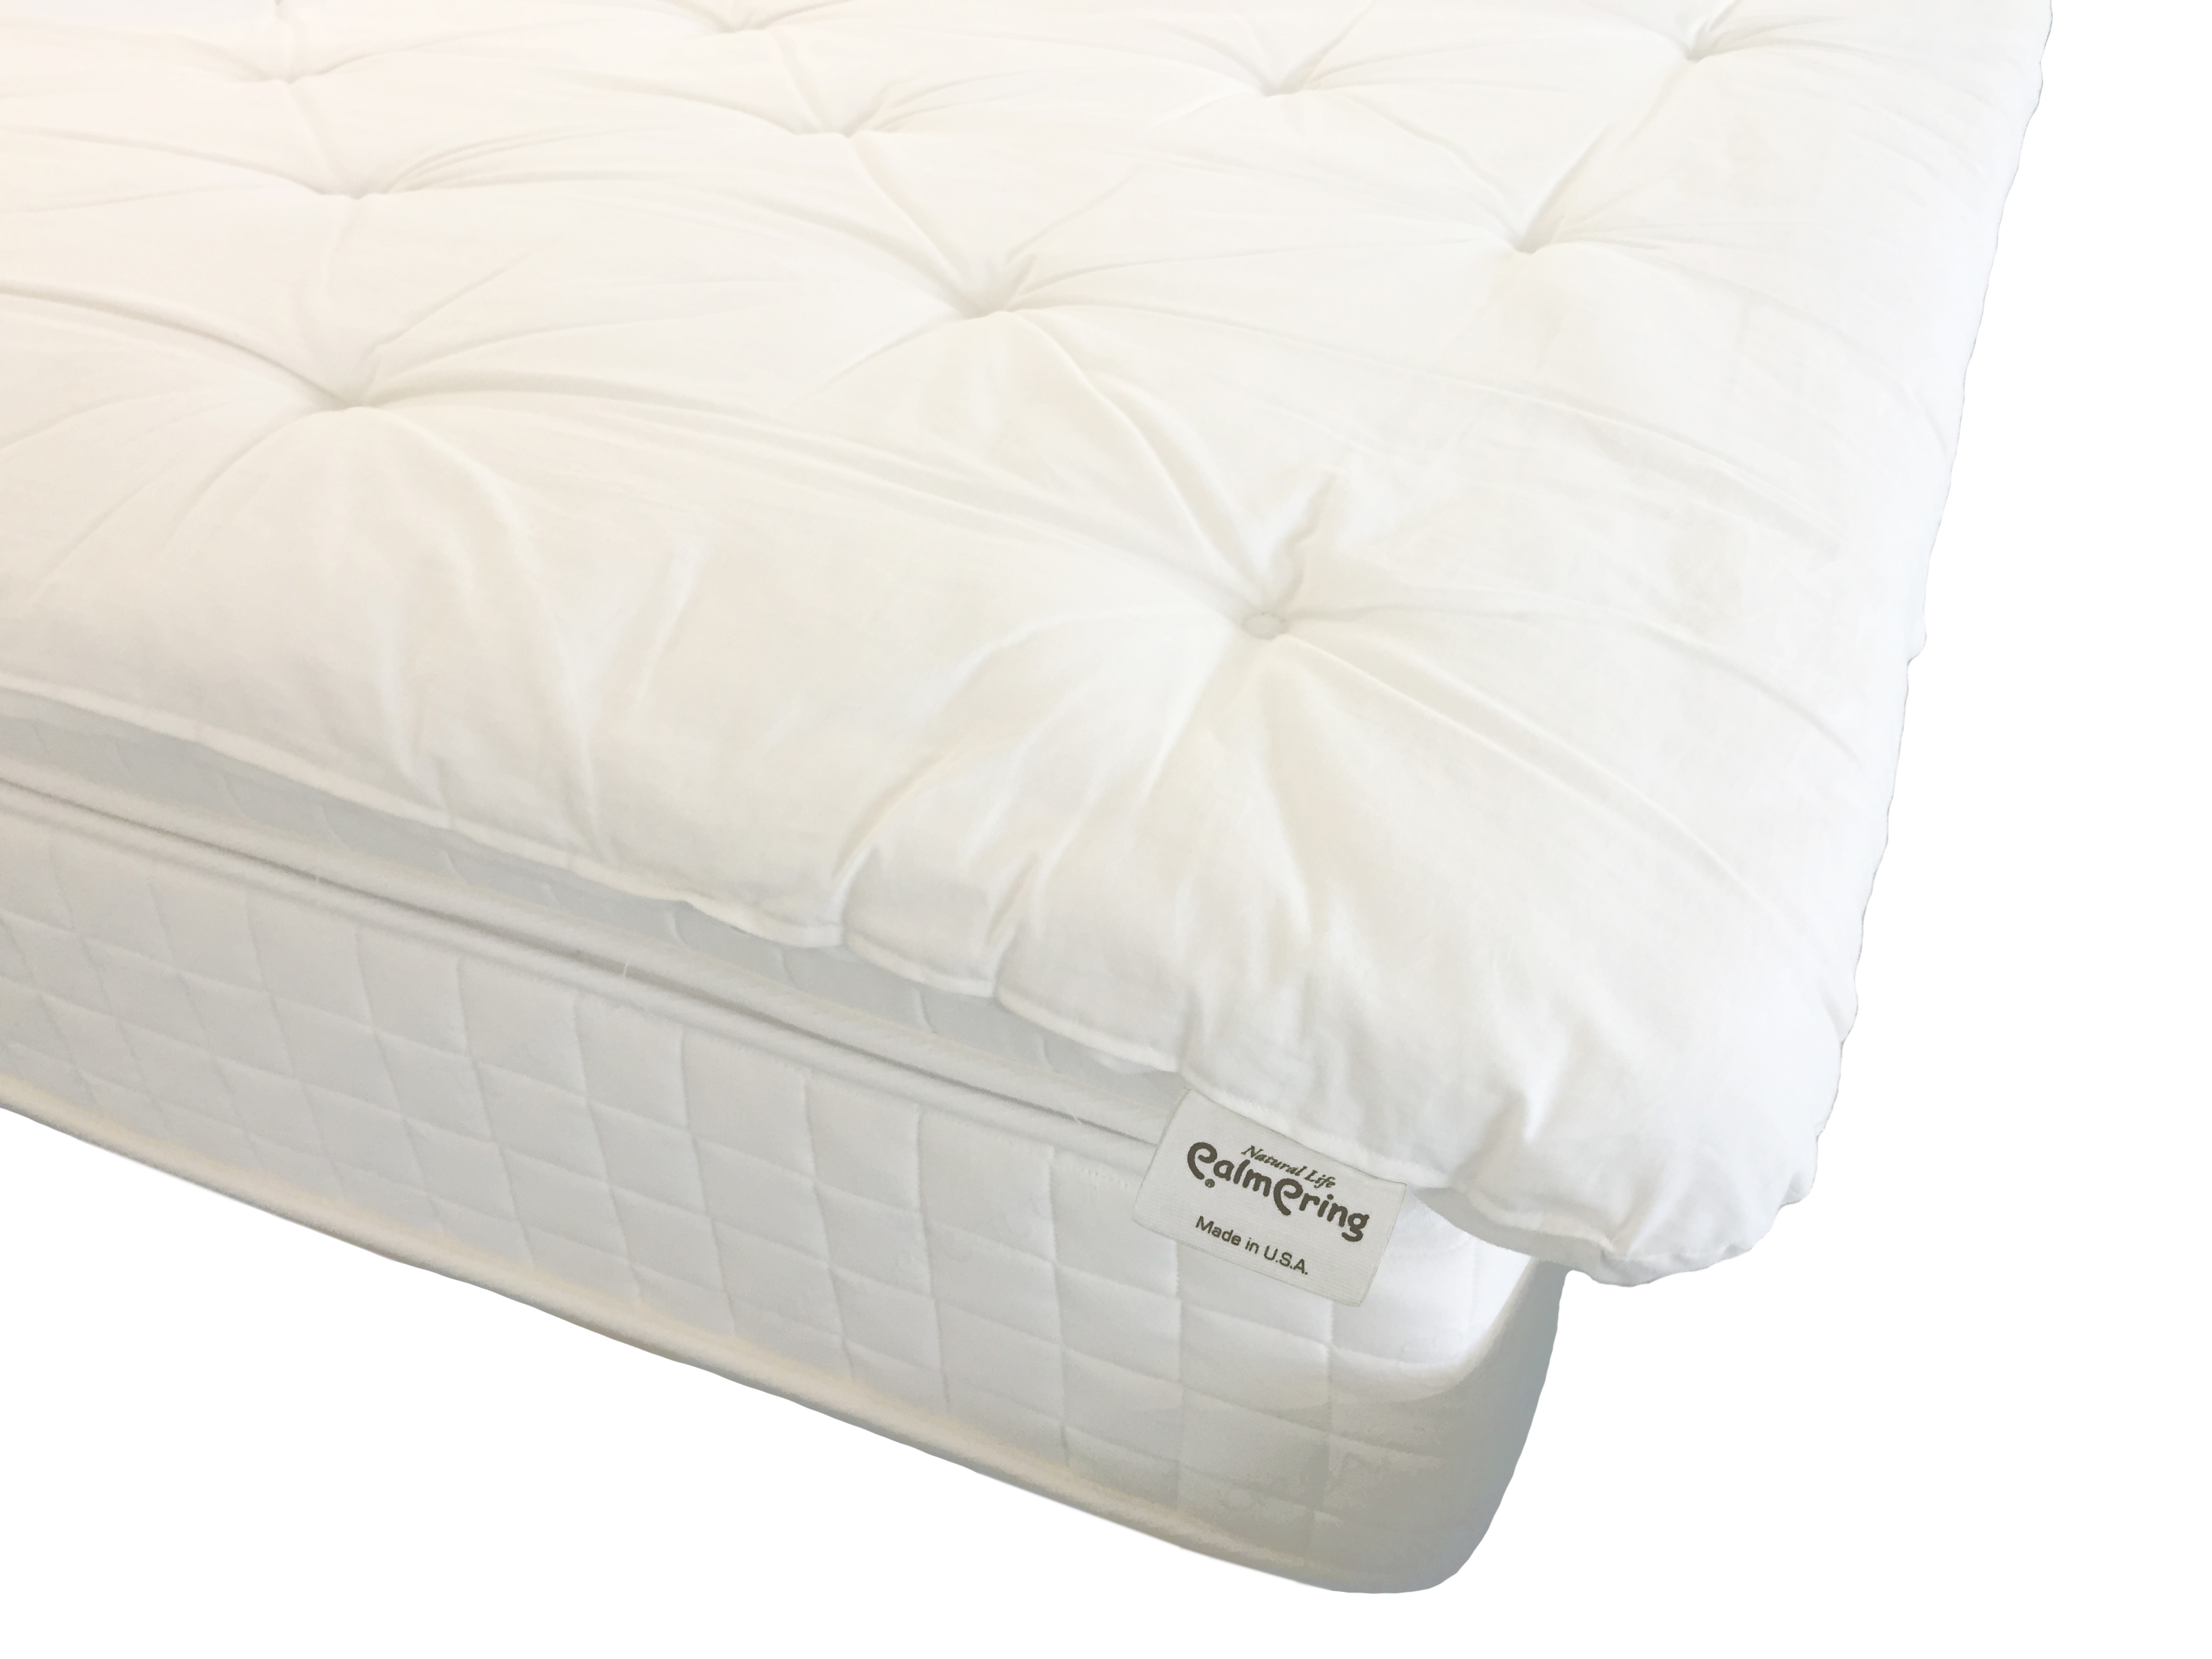 lanolize a wool mattress pad